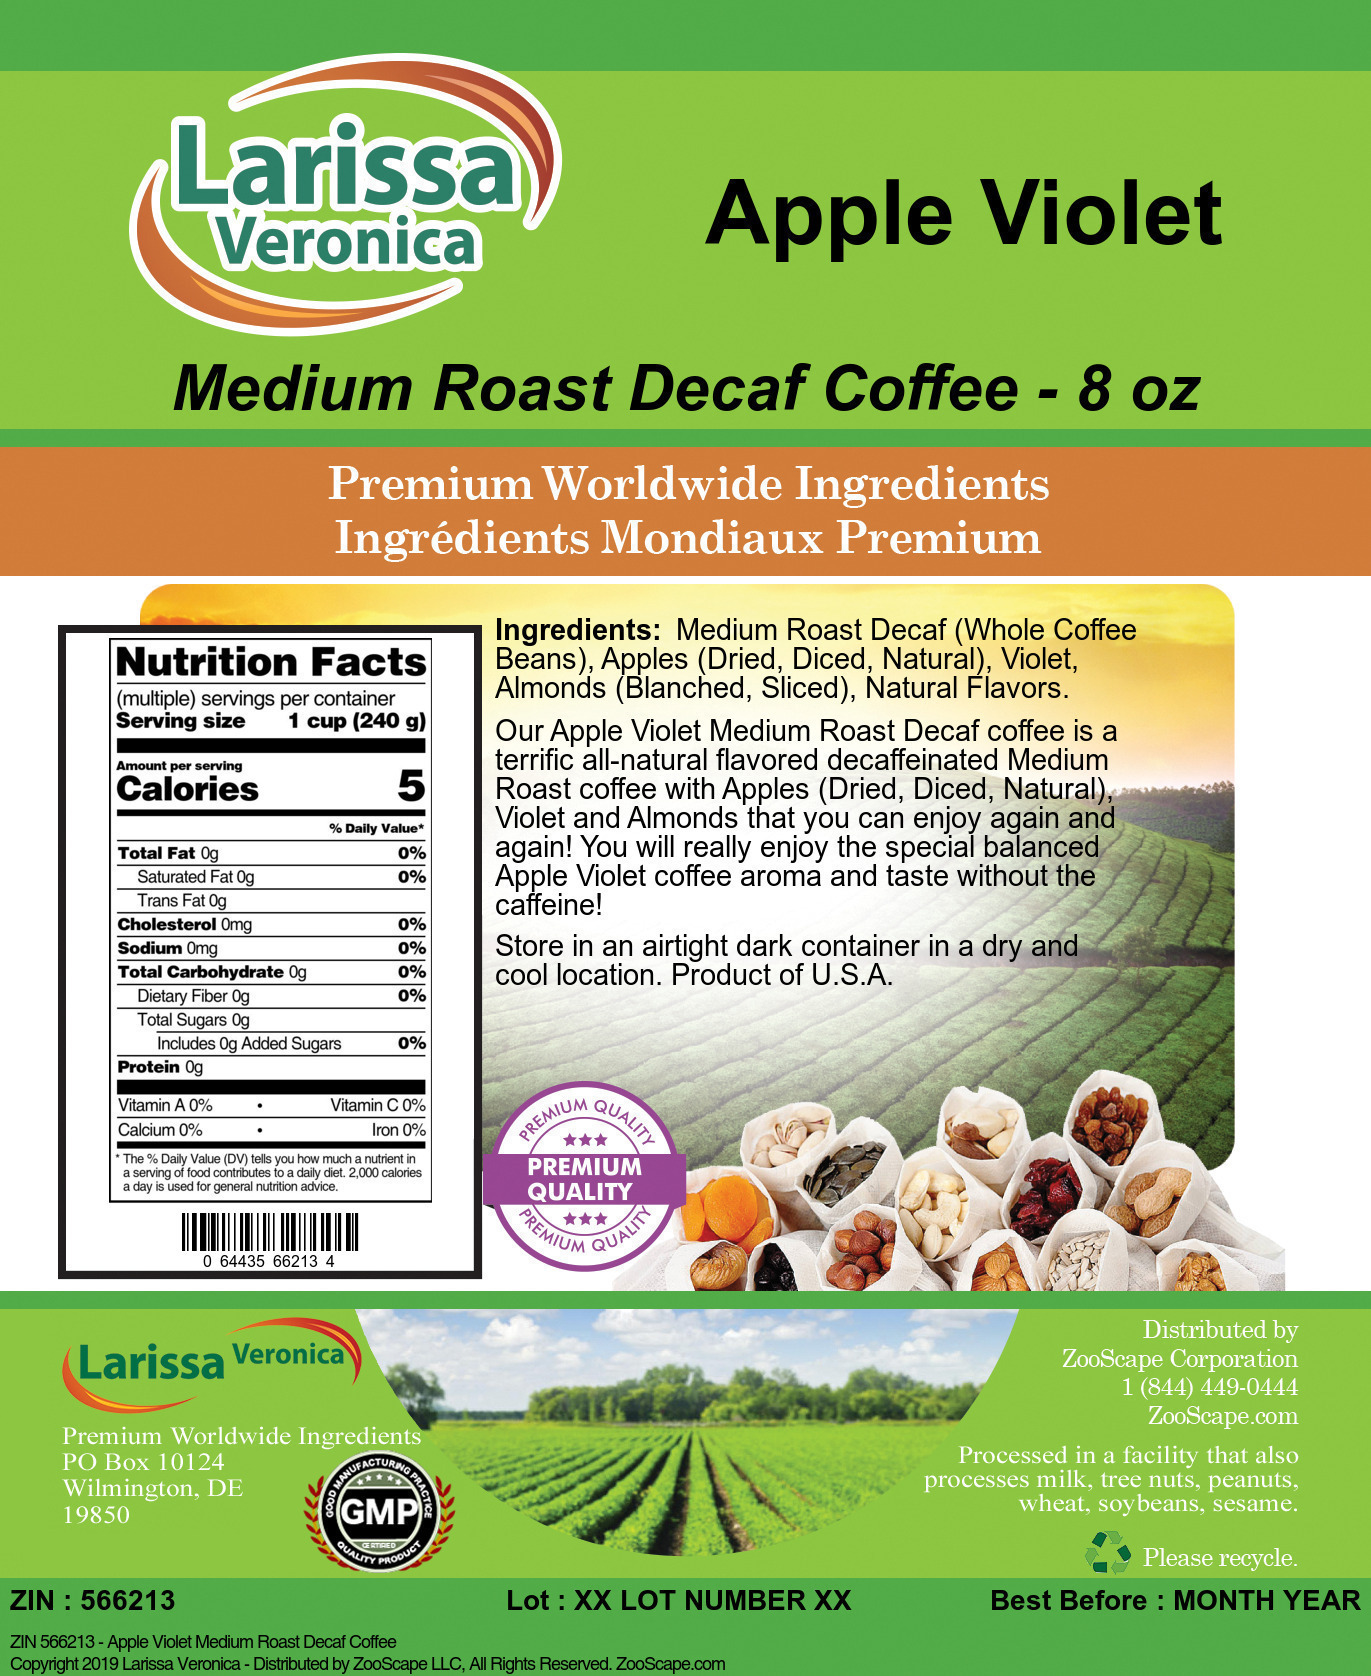 Apple Violet Medium Roast Decaf Coffee - Label